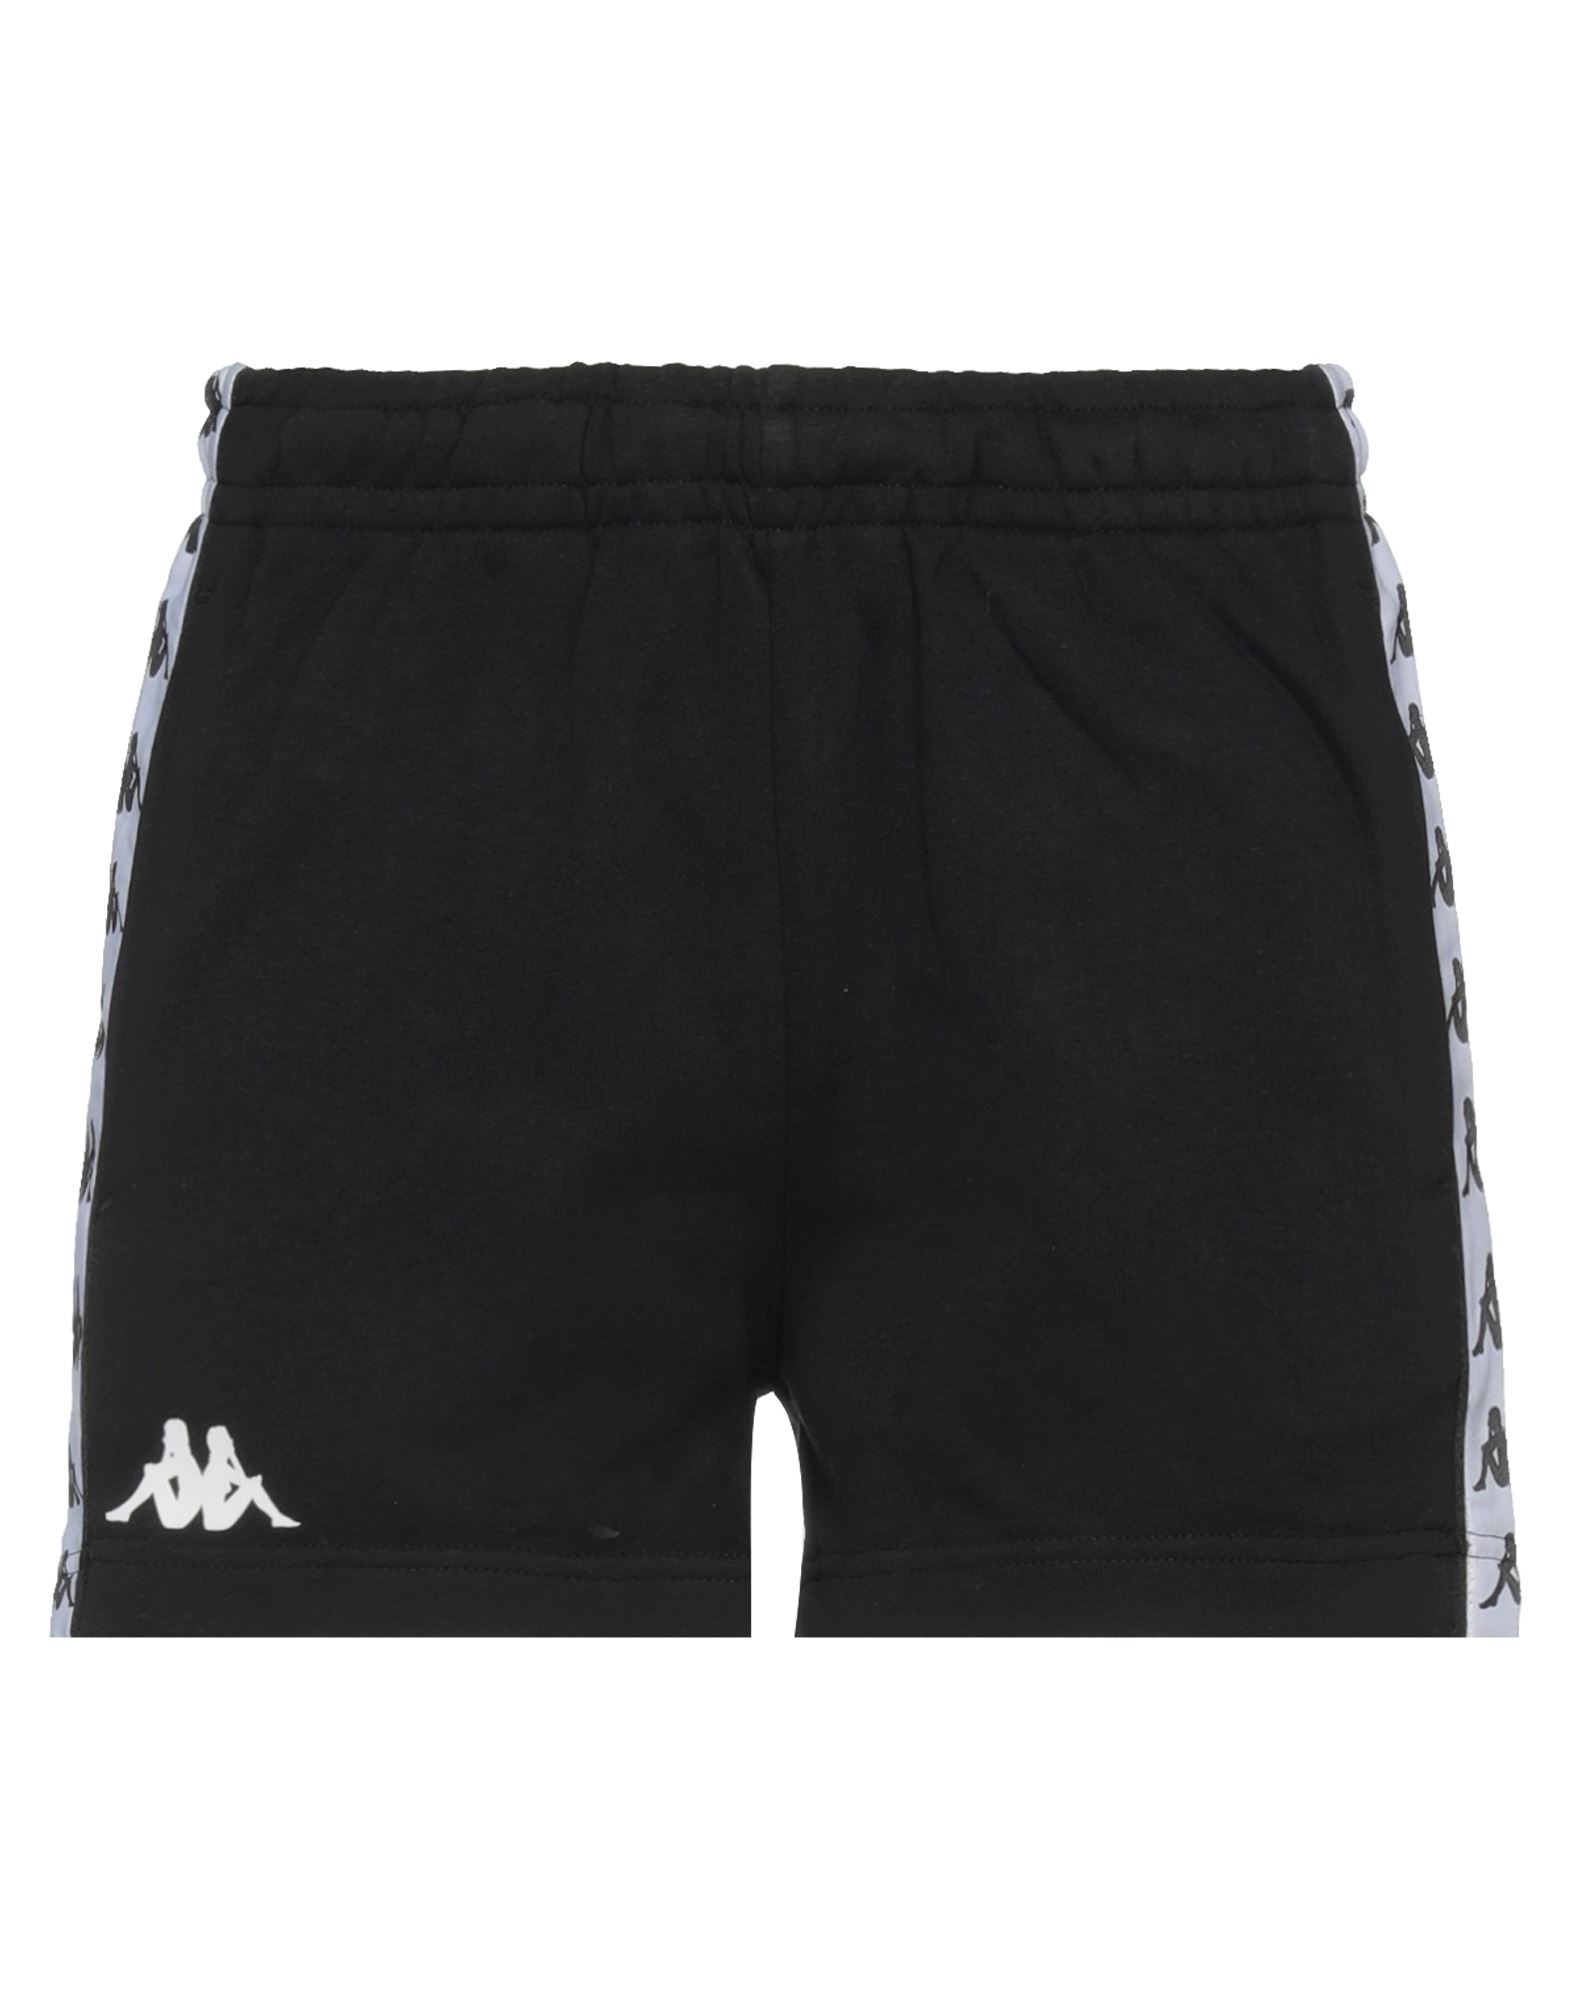 Kappa Woman Shorts & Bermuda Shorts Black Size L Cotton, Polyester